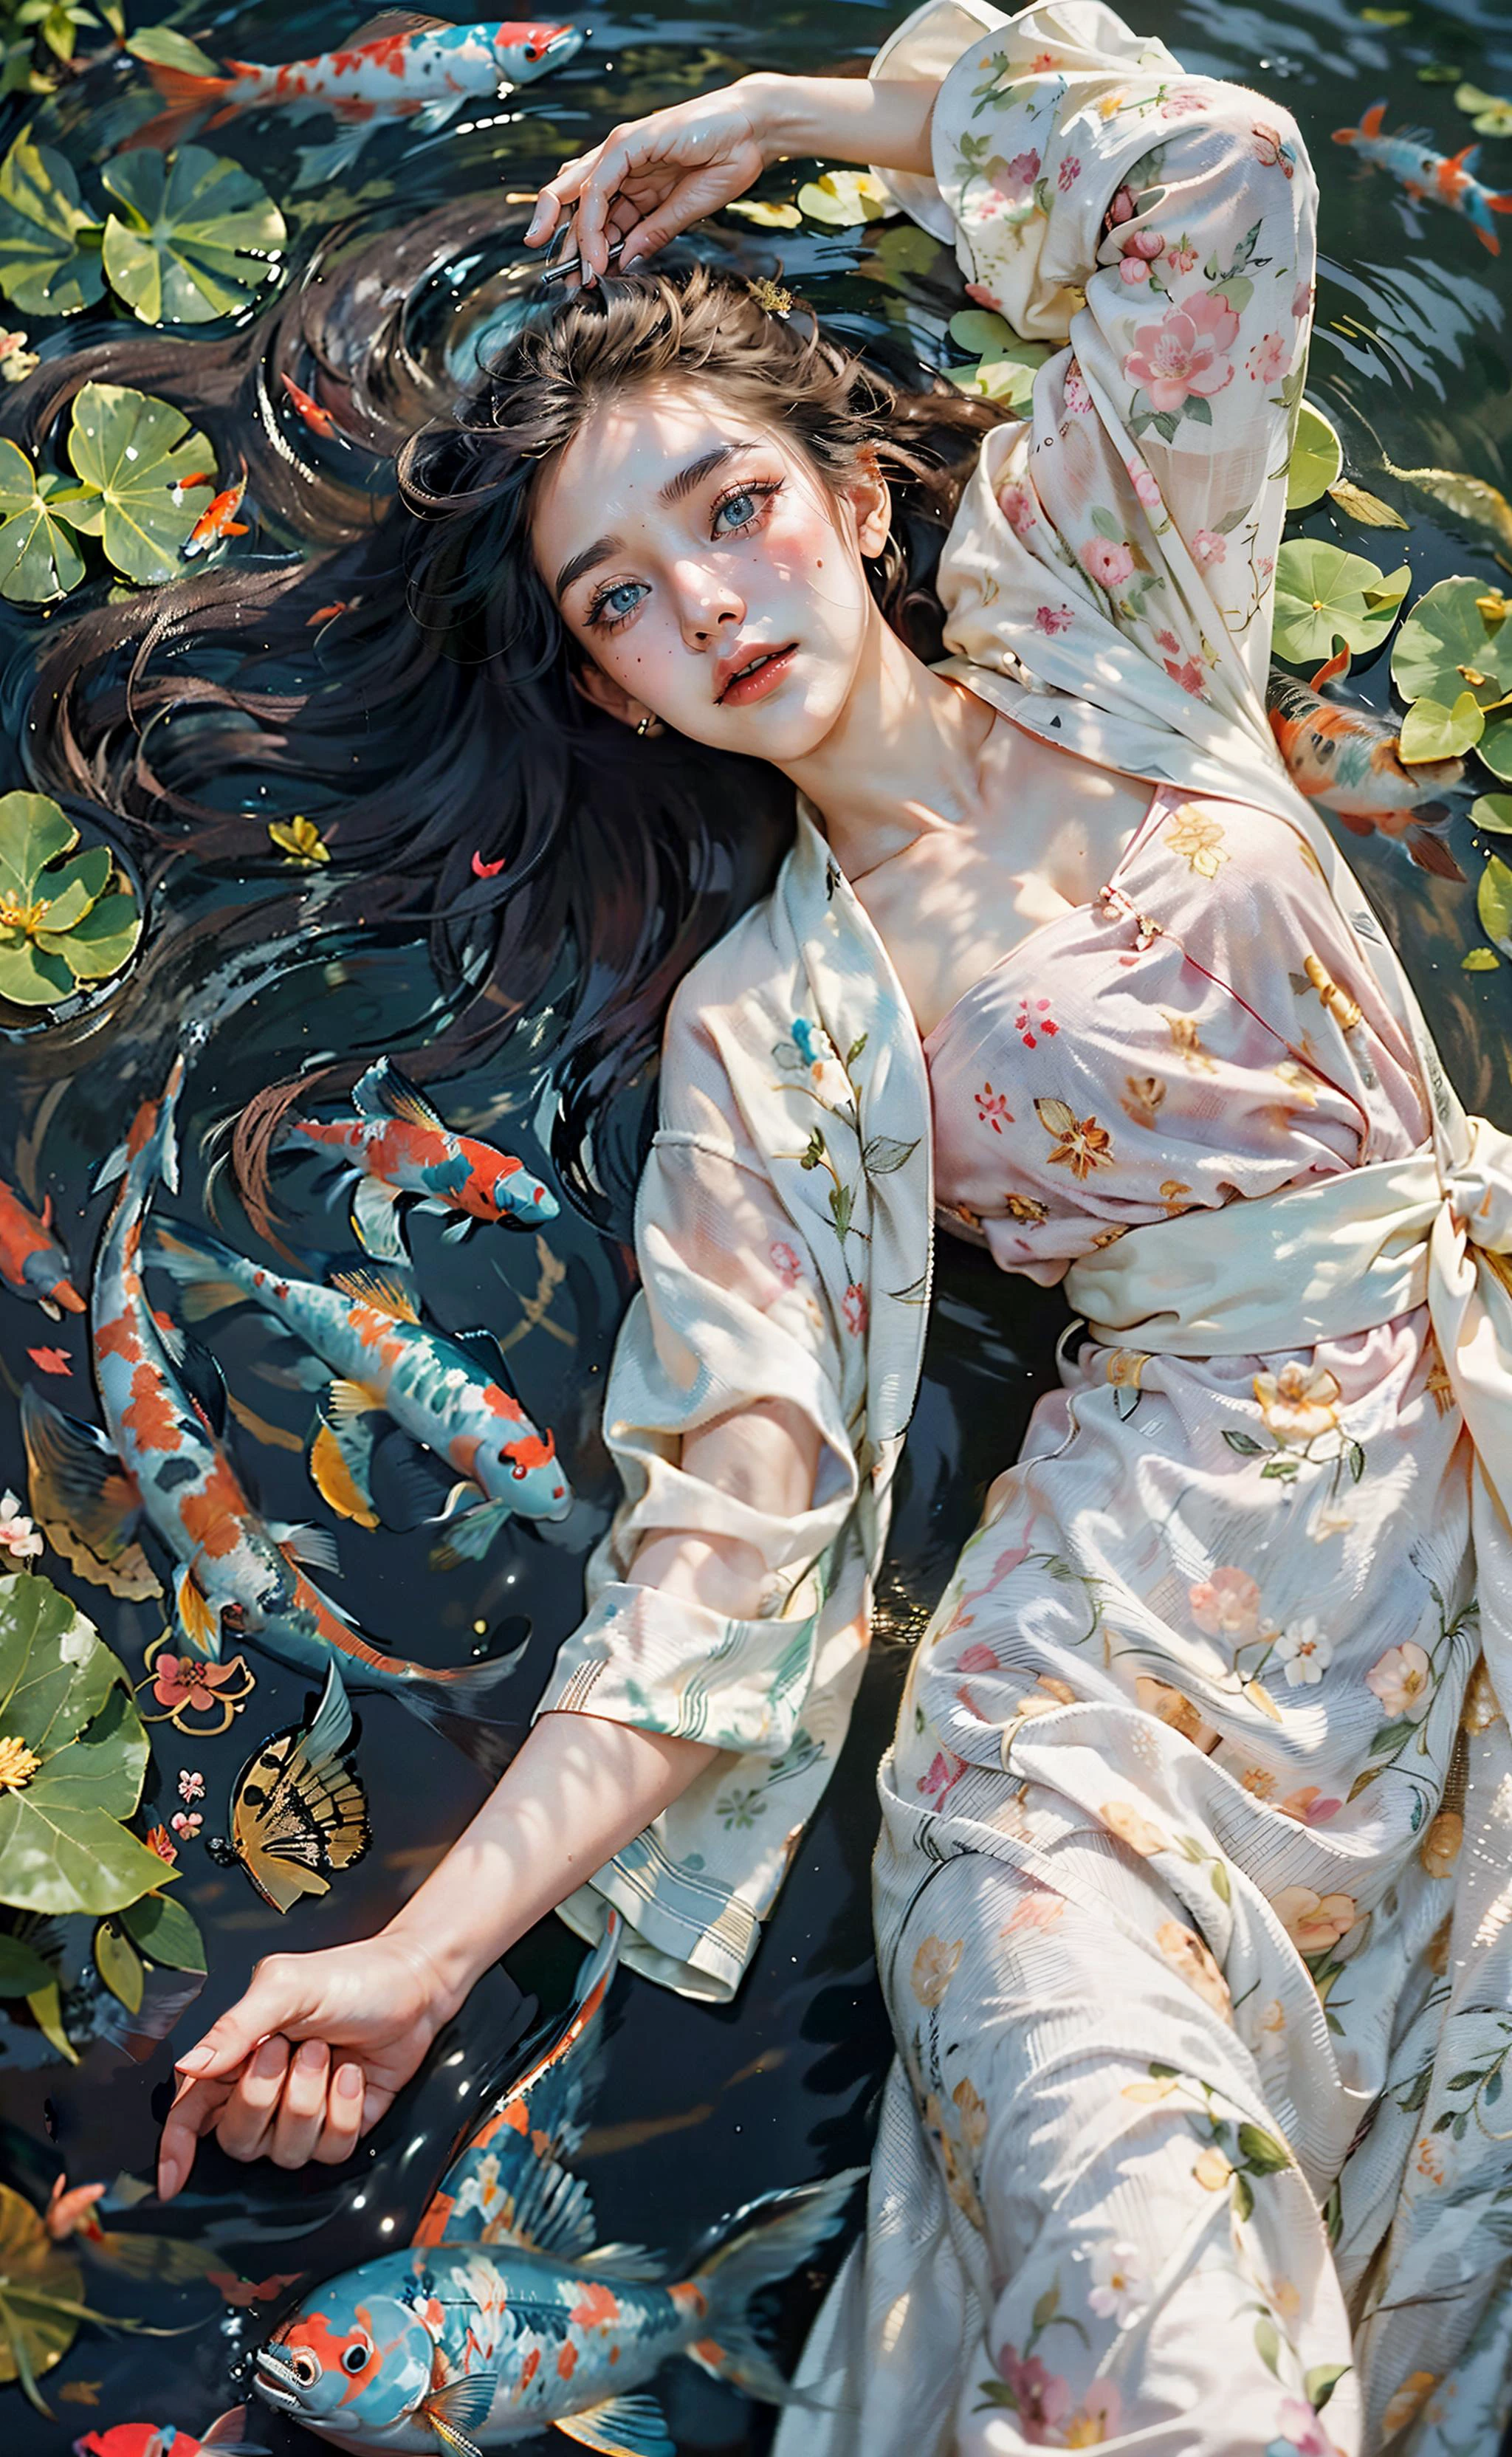 Auf dem Wasser schweben, Lied_HanFu, ((beste Qualität)), ((Meisterwerk)), ((Realistisch)), ((Mädchen liegt auf dem Rücken, mit Koi-Fischen auf dem Wasser schwimmen, bunte Fische)),
In einer malerischen Szene der Ruhe, ein 22-jähriges Mädchen mit kleinen Brüsten schwimmt anmutig auf der Wasseroberfläche. Gekleidet in ein traditionelles Hanfu-Kleid, das aufwendig mit Blumenmustern verziert ist, Sie verkörpert eine elegante Schönheit. Ihr wallendes Haar, strahlt ein sanftes Leuchten aus, tanzt frei in der umgebenden Brise. Das Wasser unter ihr ist akribisch detailliert, jede Welle und jede Reflexion einfangen. Golden, Rot, Schwarz, und weiße Koi-Fische schwimmen anmutig neben ihr, Ihre leuchtenden Farben verleihen der ruhigen Atmosphäre eine fesselnde Lebendigkeit. Seerosen und zarte rosa Blüten zieren die Szene, Ihre Blütenblätter werden sanft vom Wind verweht, Erstellen einer skurrilen Anzeige. Das sanfte Licht betont das Gesicht des Mädchens, enthüllt ihre atemberaubenden Gesichtszüge inmitten des wunderschönen Tyndall-Effekts. Der helle Hintergrund verstärkt die filmische Qualität der Komposition, die gesamte Szene in lebendige Farben hüllen. This artful fusion of elements creates a truly cinematic and visually breathtaking Meisterwerk, wo das Mädchen und der Fisch in einem Moment der Harmonie und Schönheit koexistieren. (Haarschnittmodell von Asymmetrischer Haarschnitt, scharfes Blau),